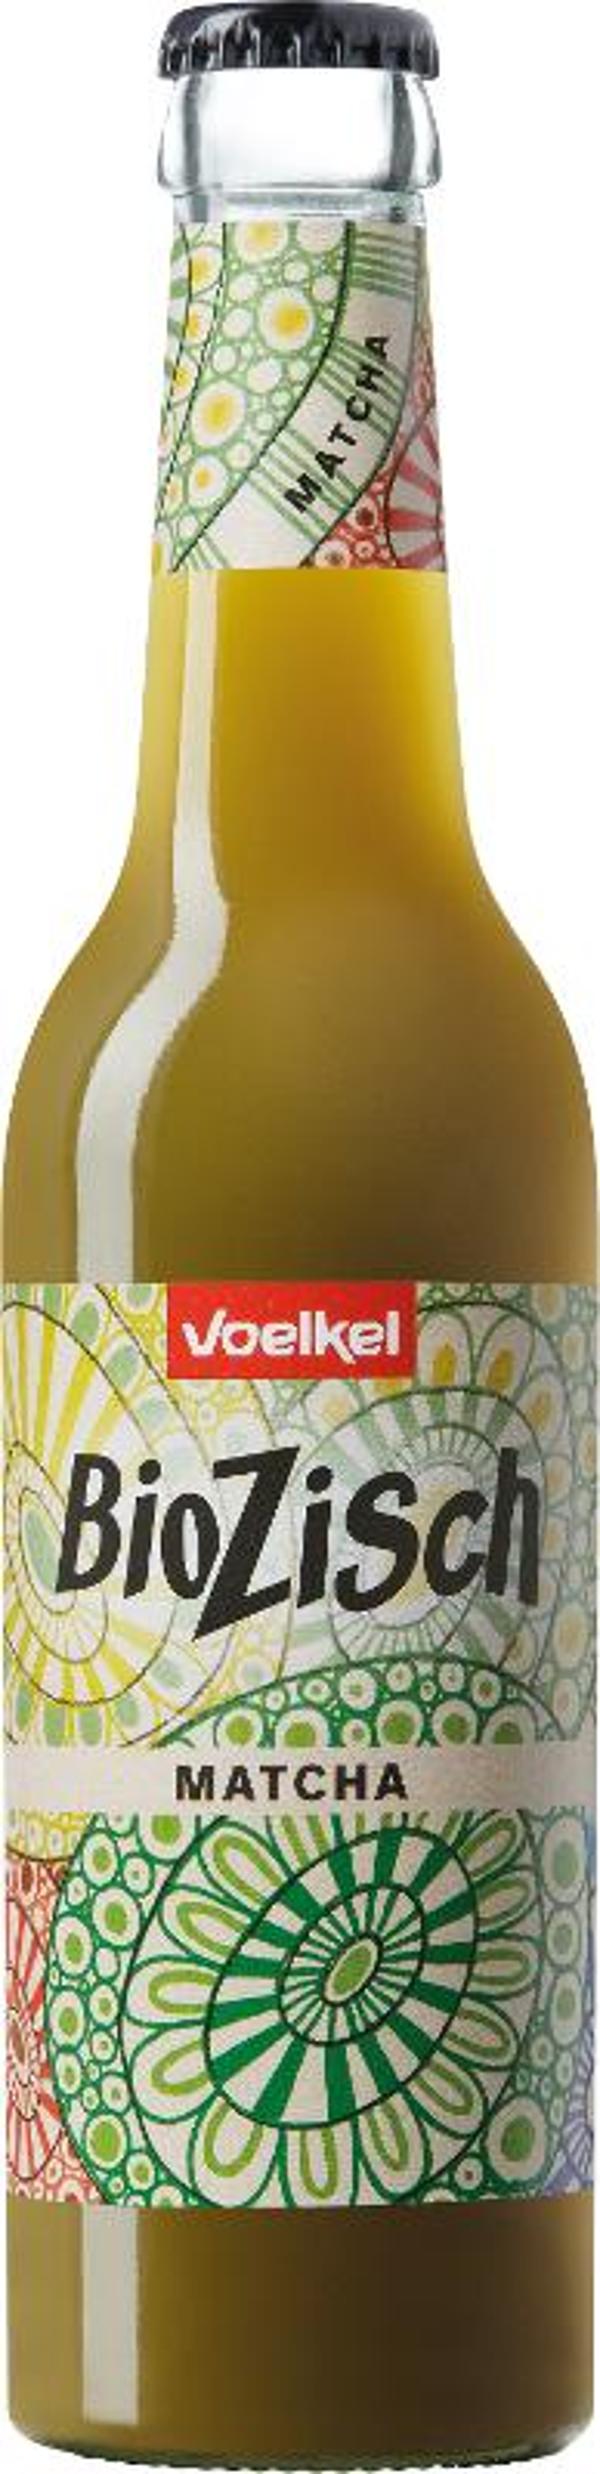 Produktfoto zu BioZisch Matcha 0,33l Flasche